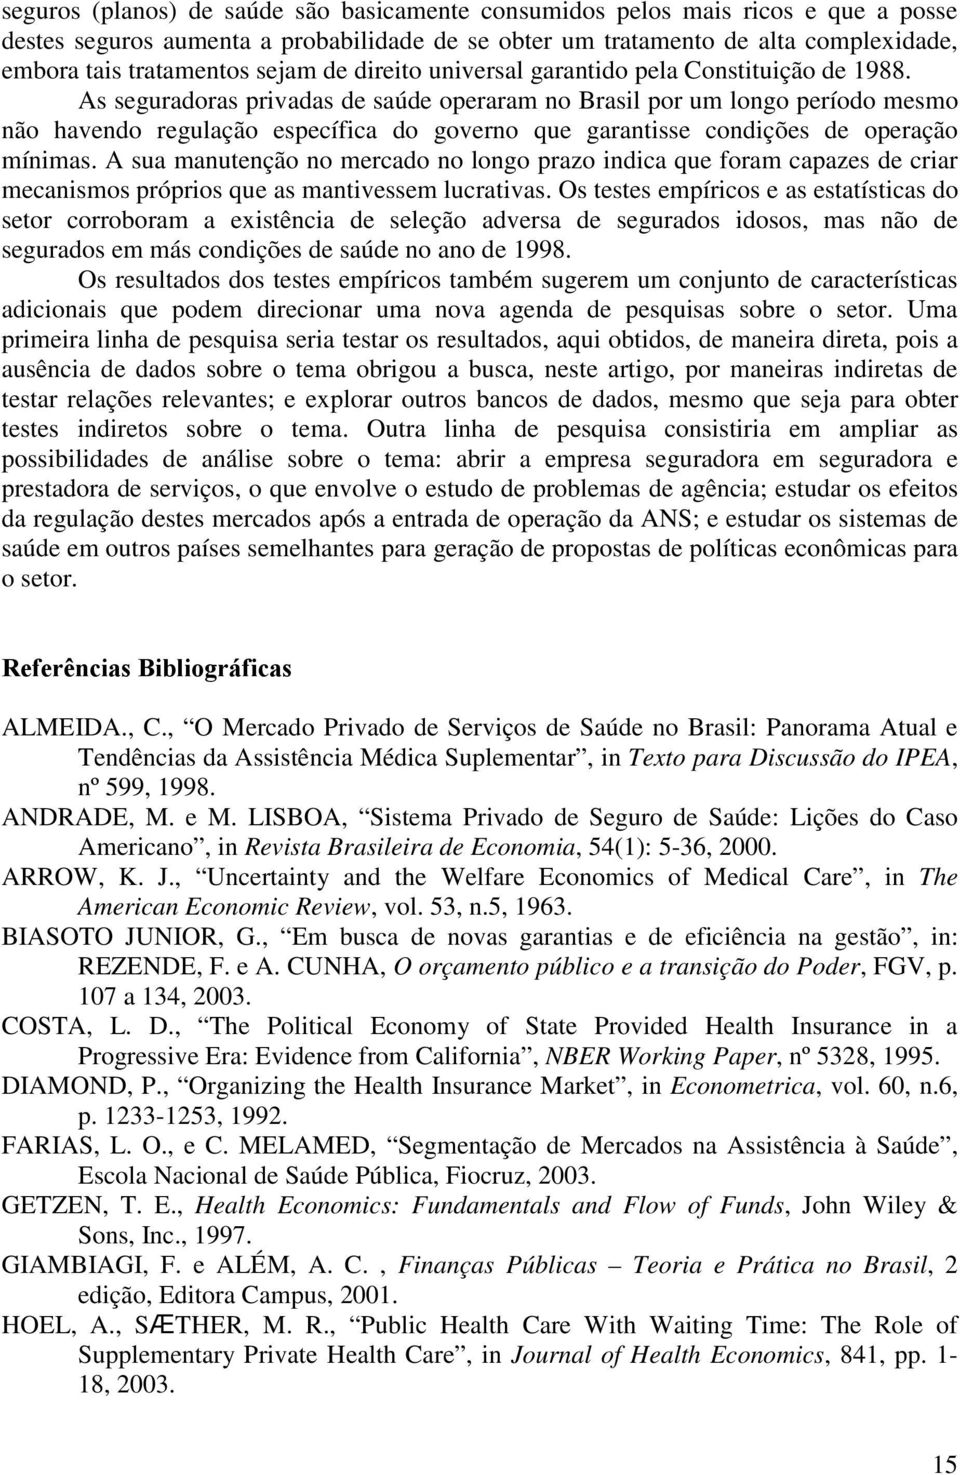 As seguradoras privadas de saúde operaram no Brasil por um longo período mesmo não havendo regulação específica do governo que garantisse condições de operação mínimas.